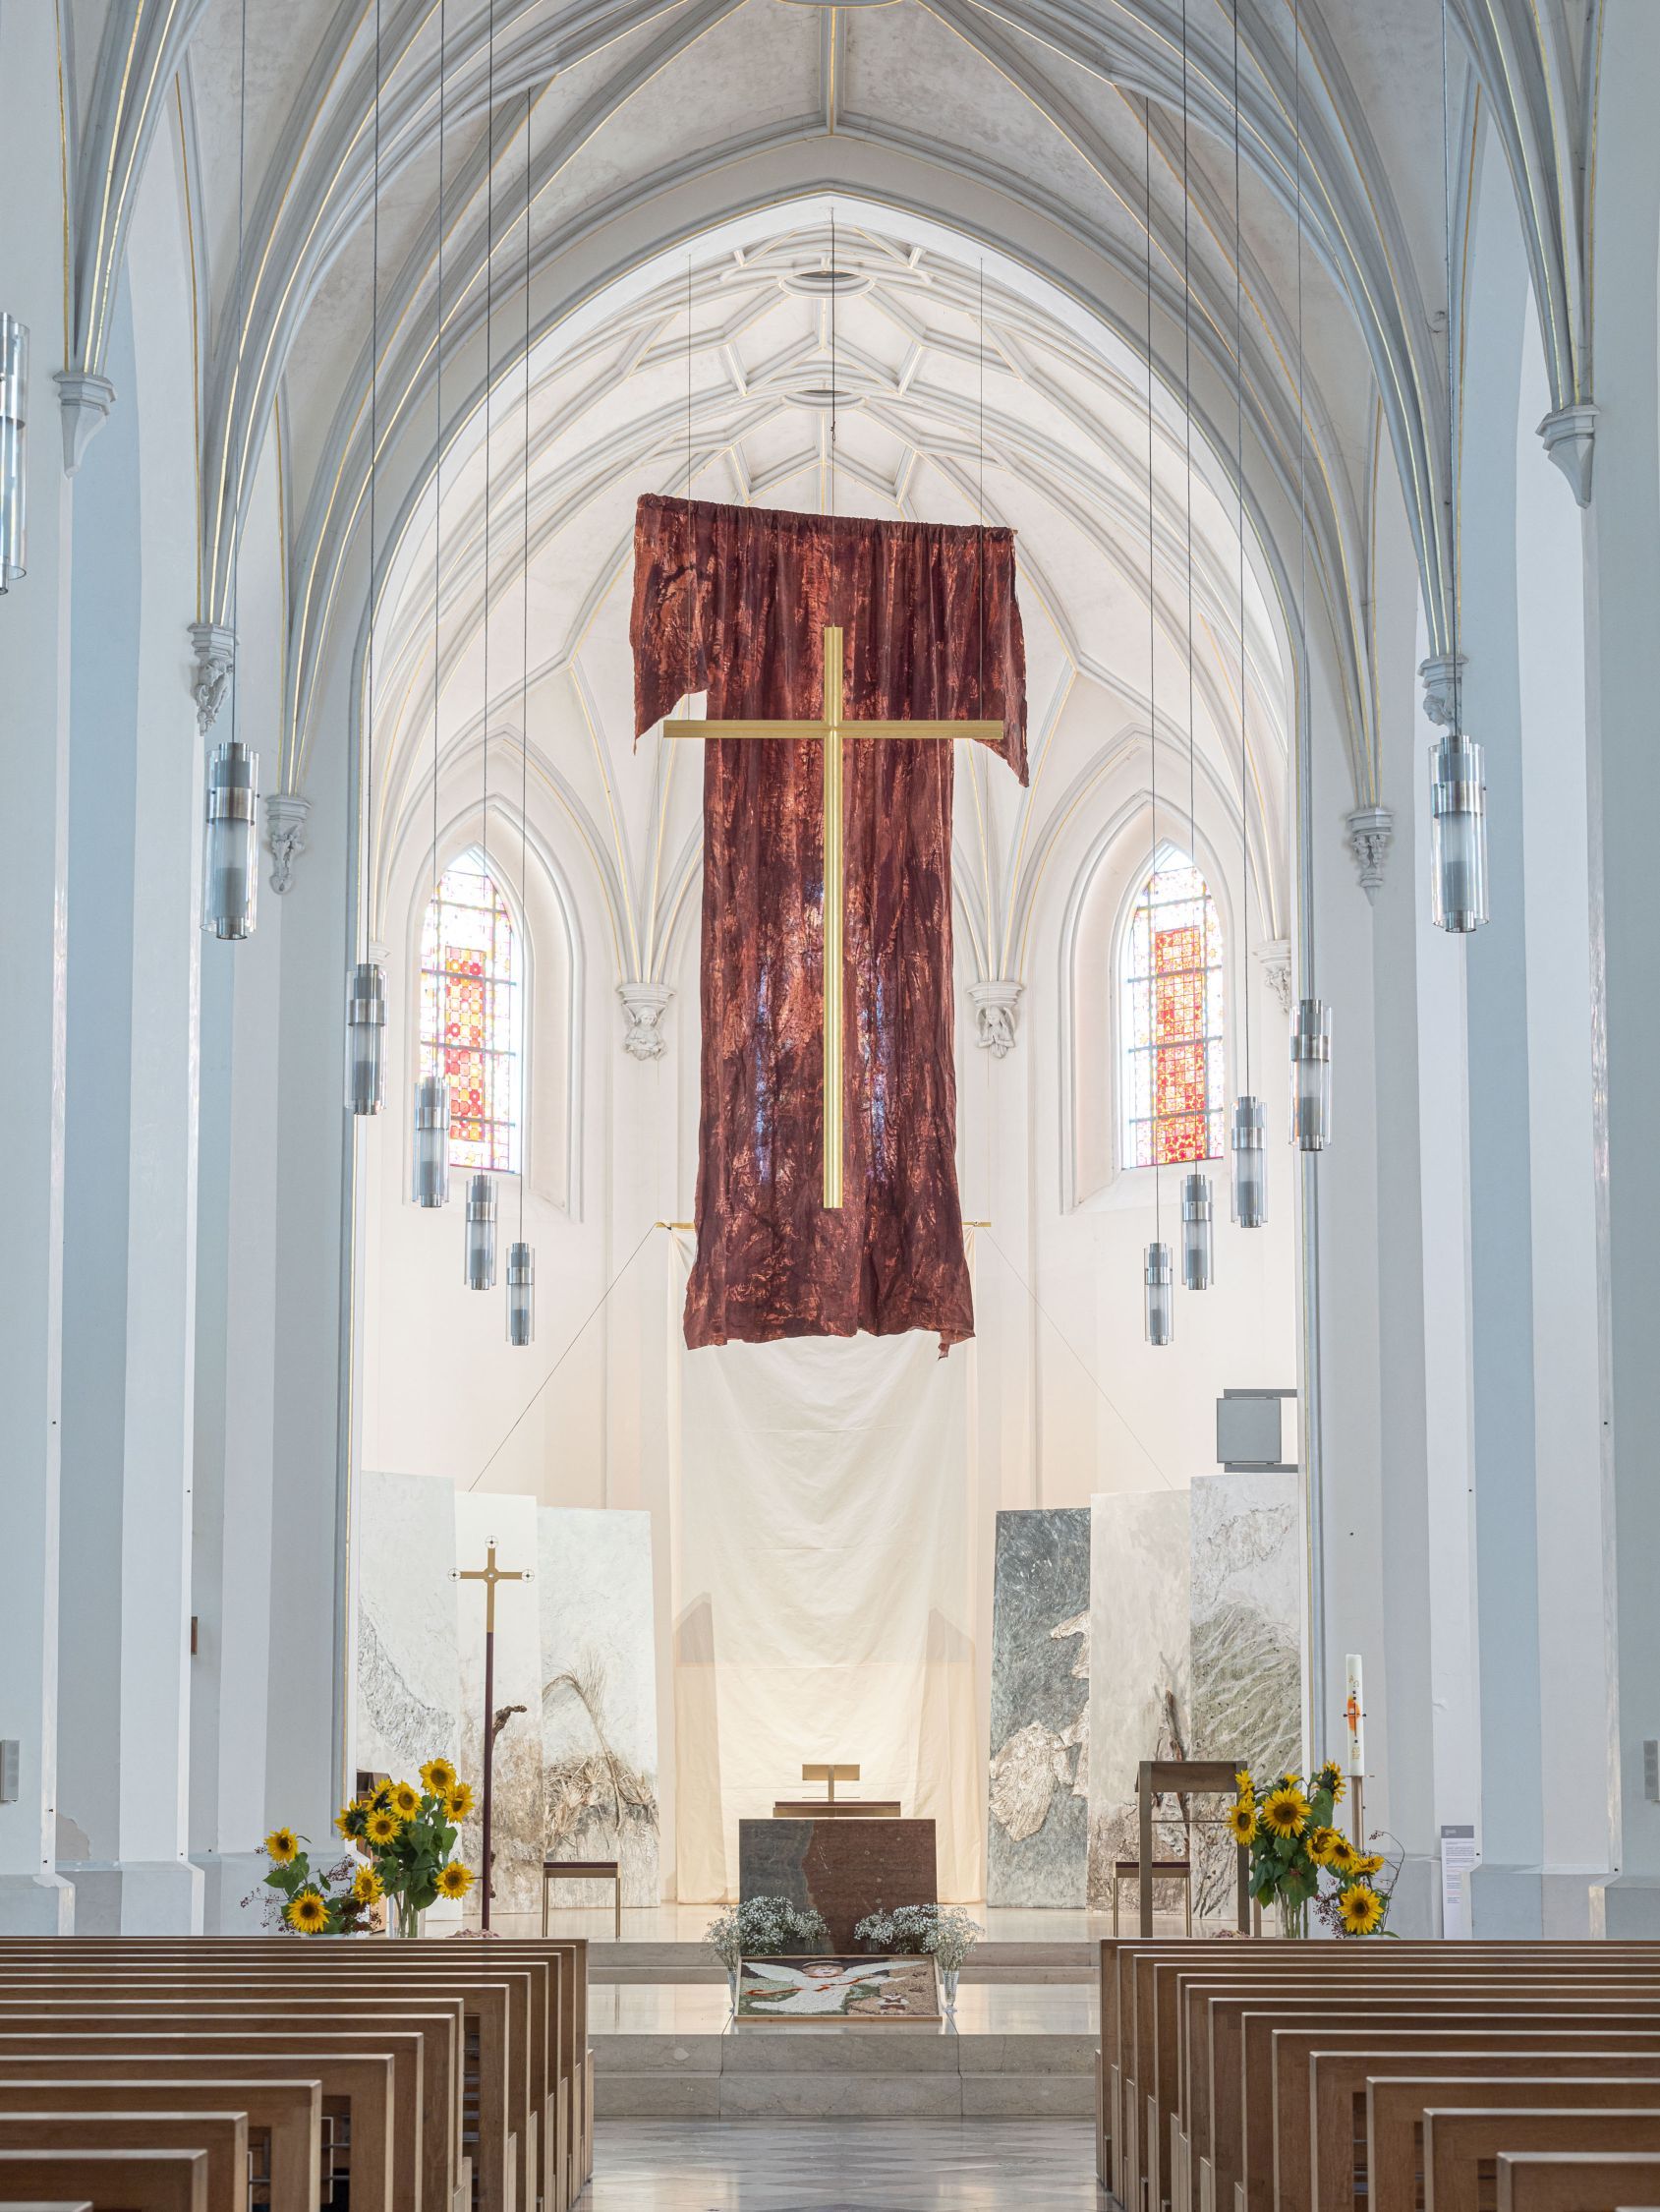 Installation in der Kirche St. Nikolaus in Rosenheim - Riesiges rotes Gewand mit Kreuz haengt im Altarraum von der Decke